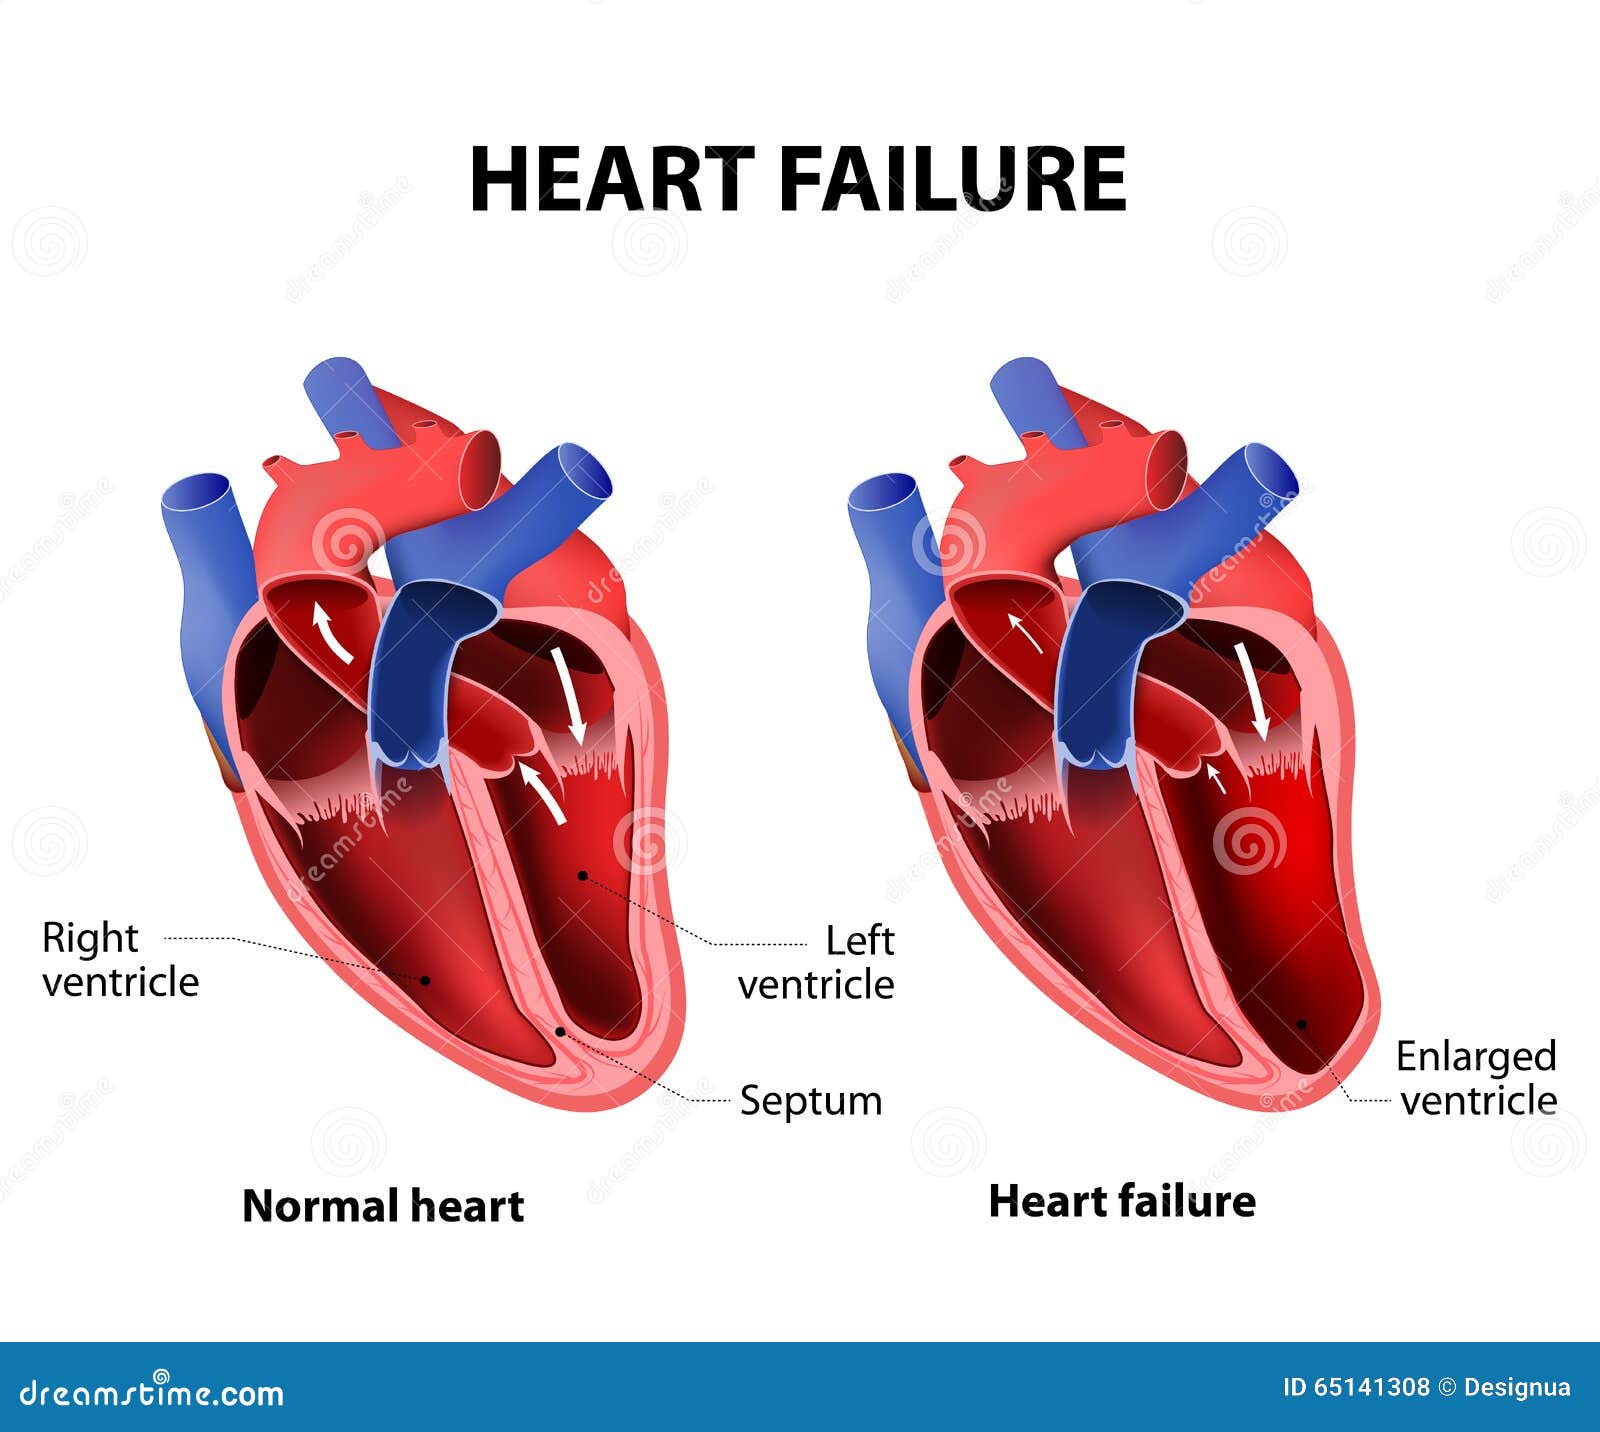 Heart Failure Stock Illustrations 3483 Heart Failure Stock